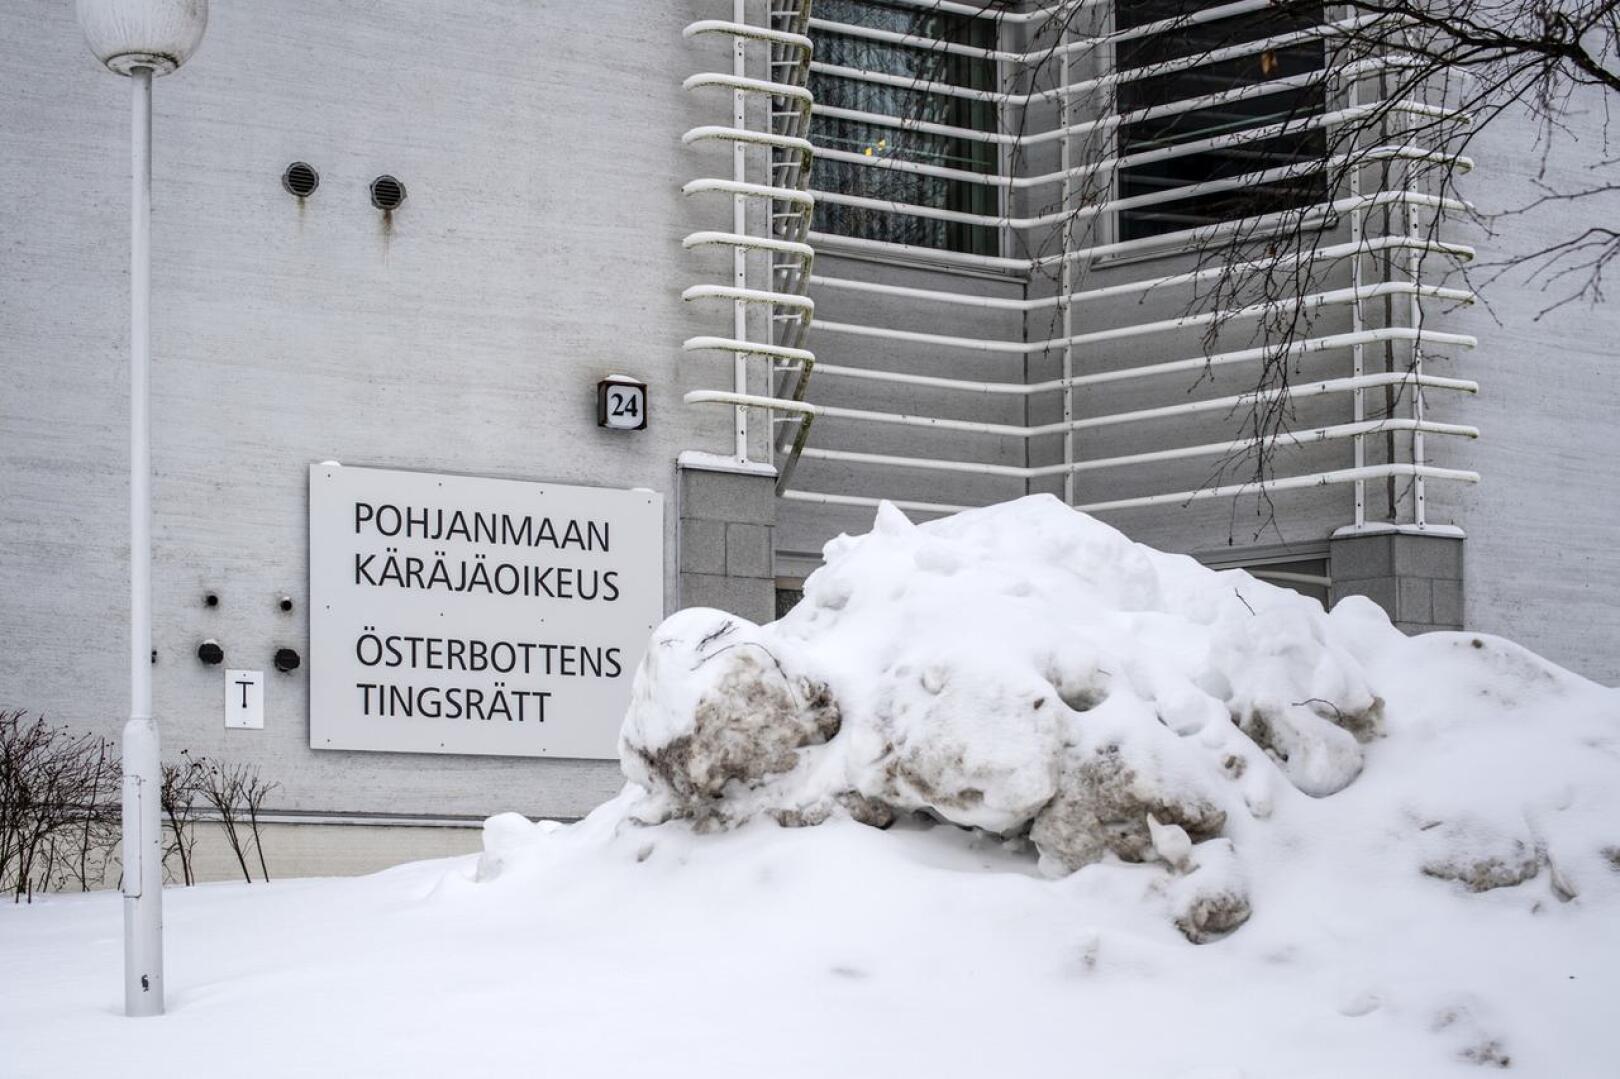 Tuomio seksuaalisesta ahdistelusta annettiin perjantaina Pohjanmaan käräjäoikeudessa.